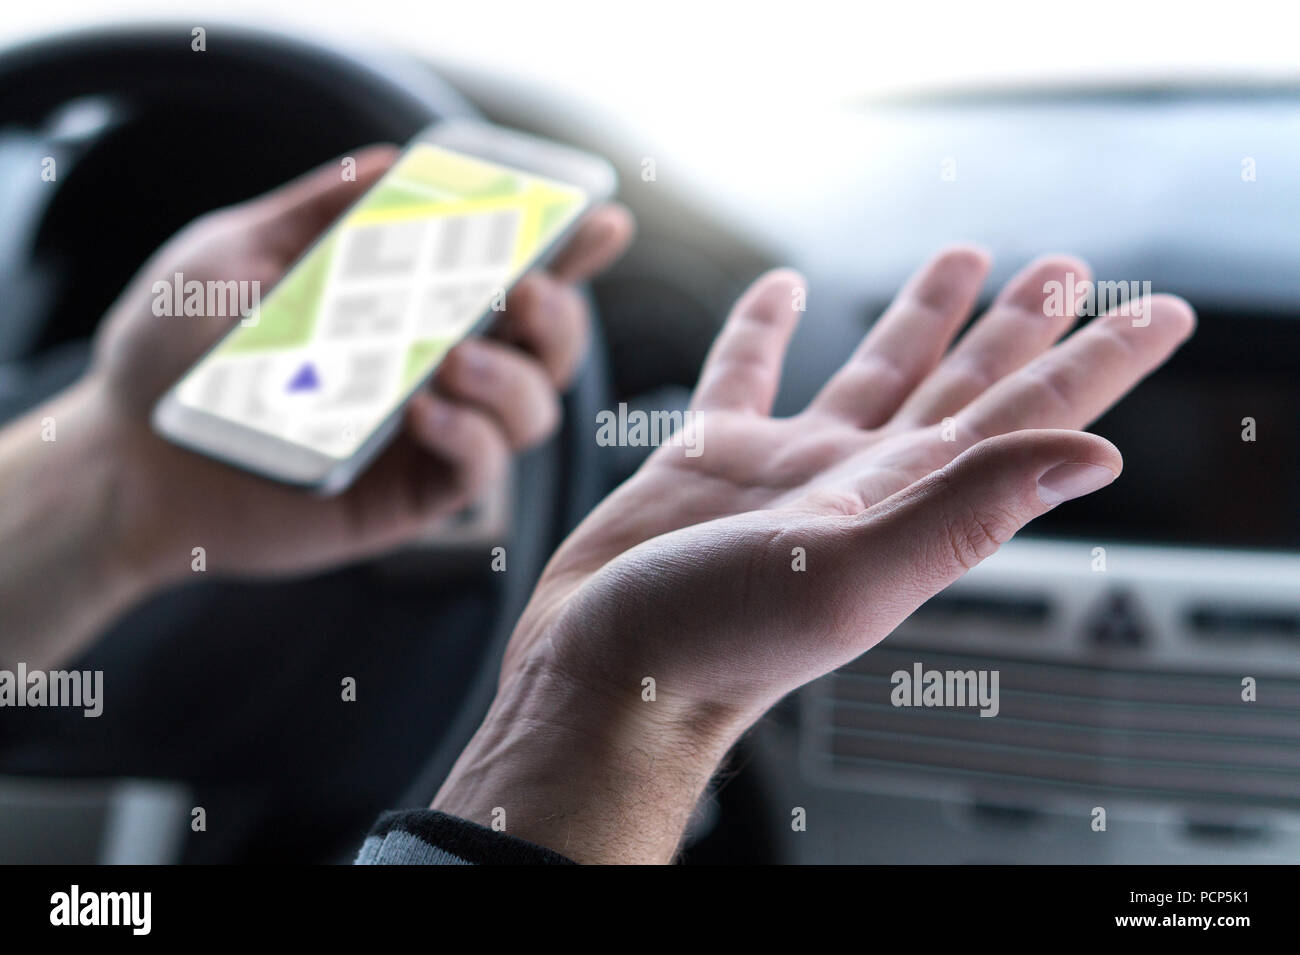 Verloren und keine GPS-Verbindung. Navigation problem. Mann mit Smartphone Karte Anwendung im Auto. Ratlos und verwirrt Treiber Verbreitung Hände. Stockfoto